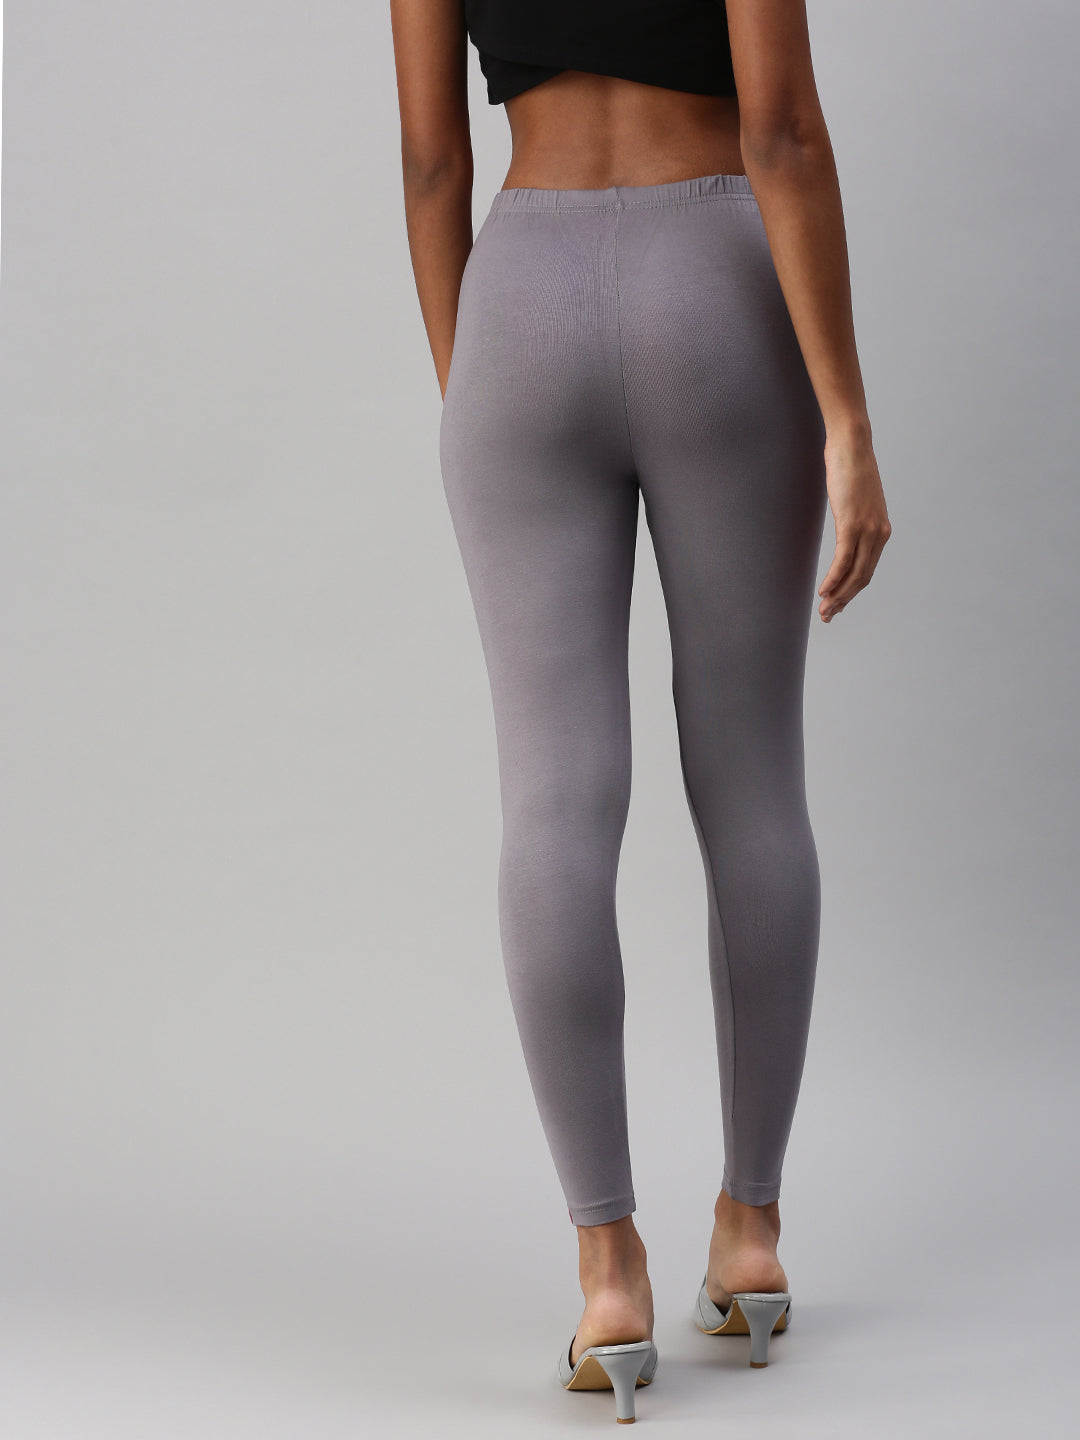 Legrisa Fashion Women's Steel Grey Colour Ankle Length Leggings in XL, XXL  & XXXL : Amazon.in: Fashion